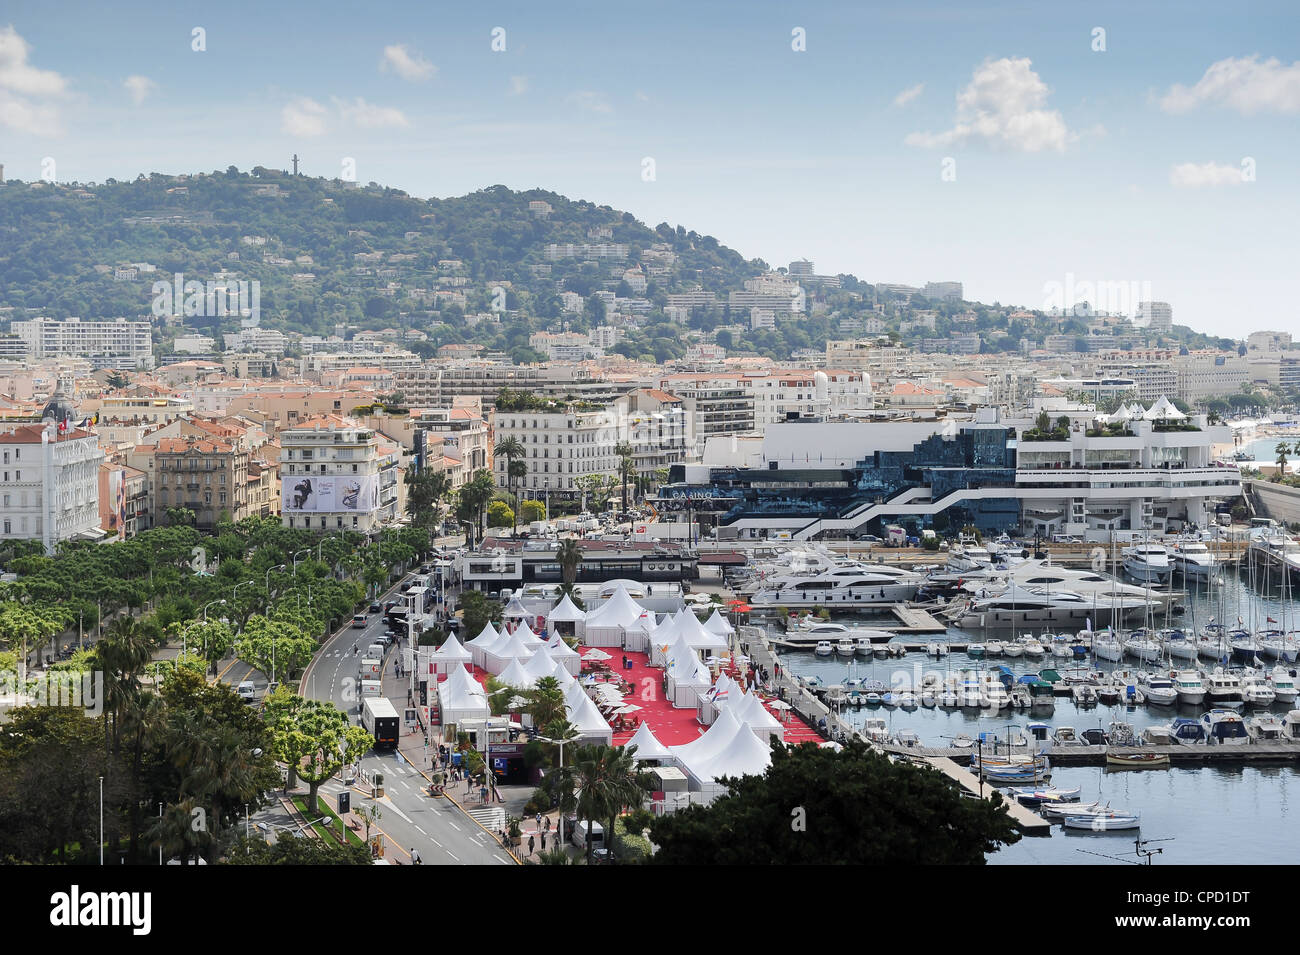 Vista general de la 65ª edición de festival internacional de cine de Cannes, en el sur de Francia. Foto de stock